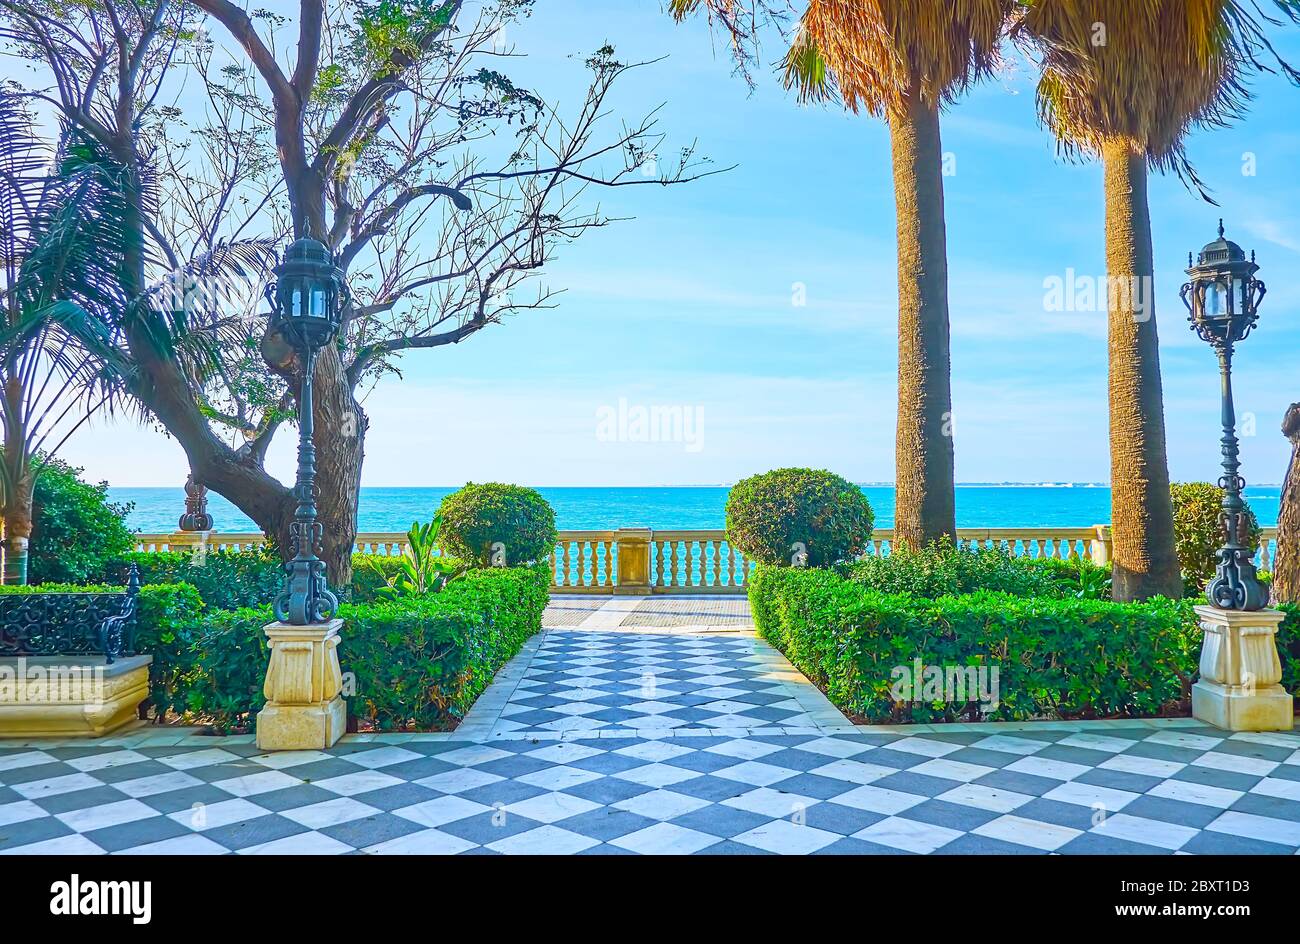 Il giardino perfettamente paesaggistico fronte oceano del Paseo de Carlos III con cespugli topiari, alte palme, retrò luci della strada in ghisa e scacchiera di pietra pa Foto Stock